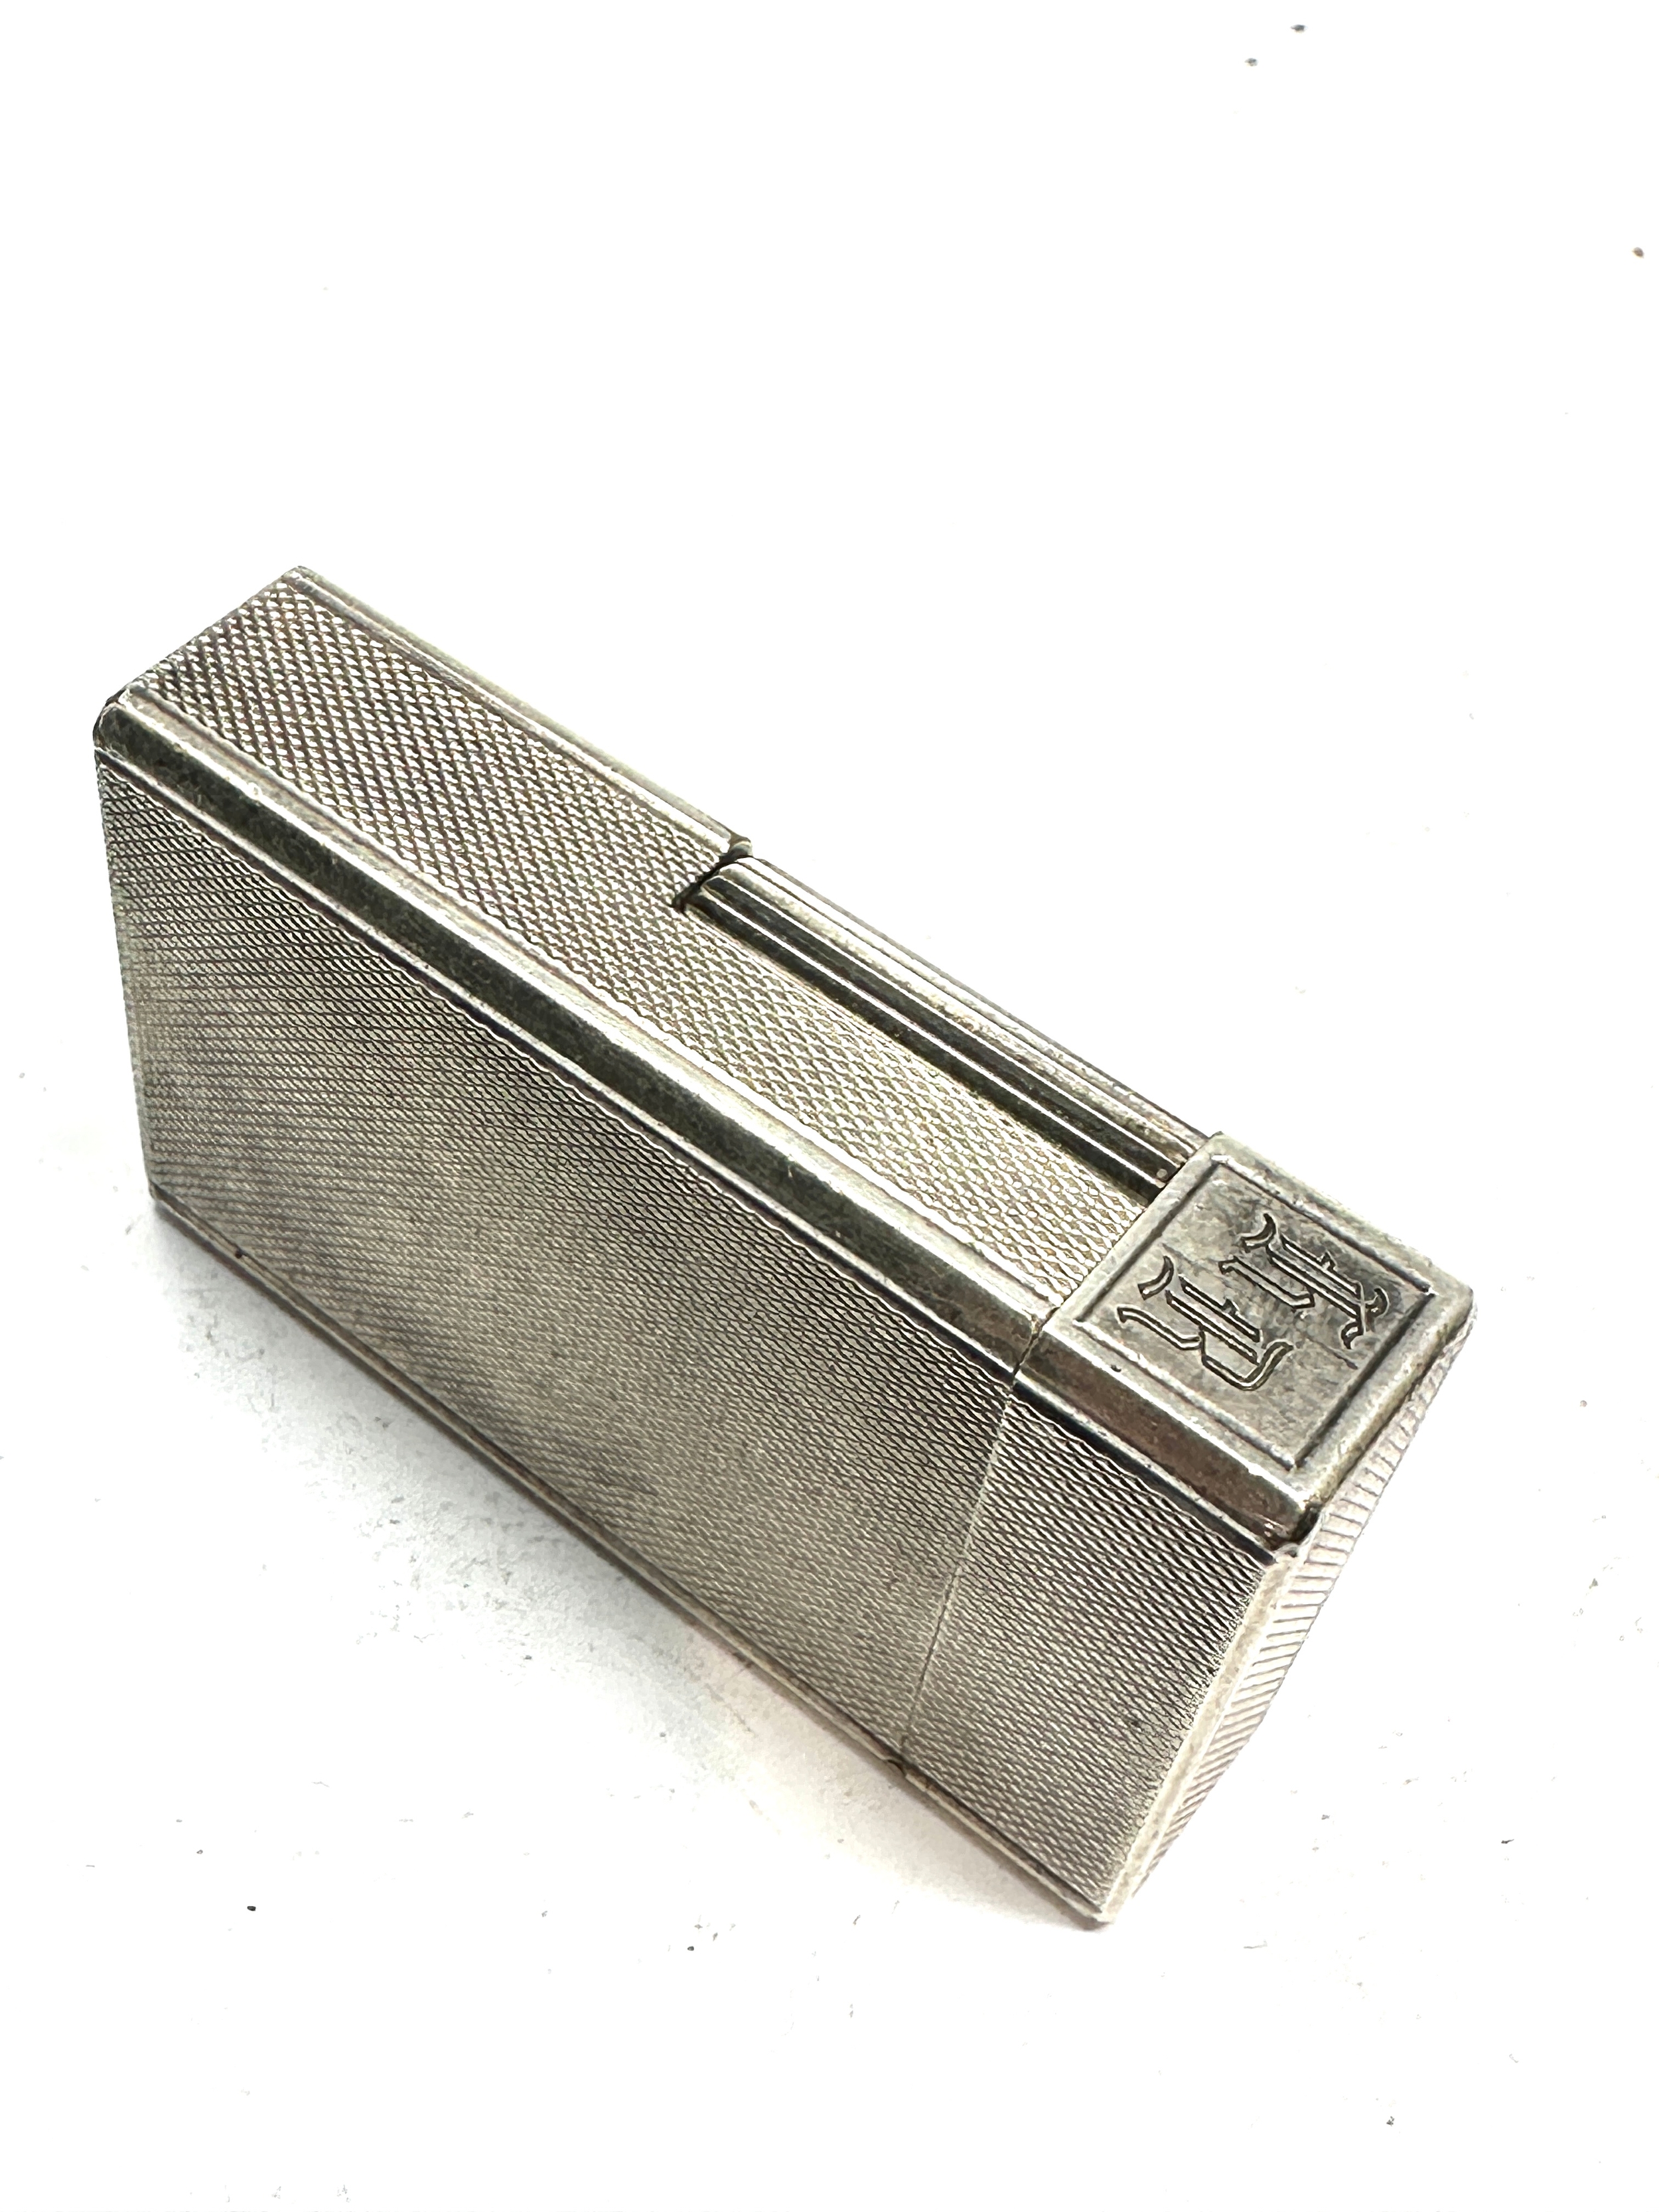 Vintage dupont silver plated cigarette lighter missing filler cap - Image 4 of 4